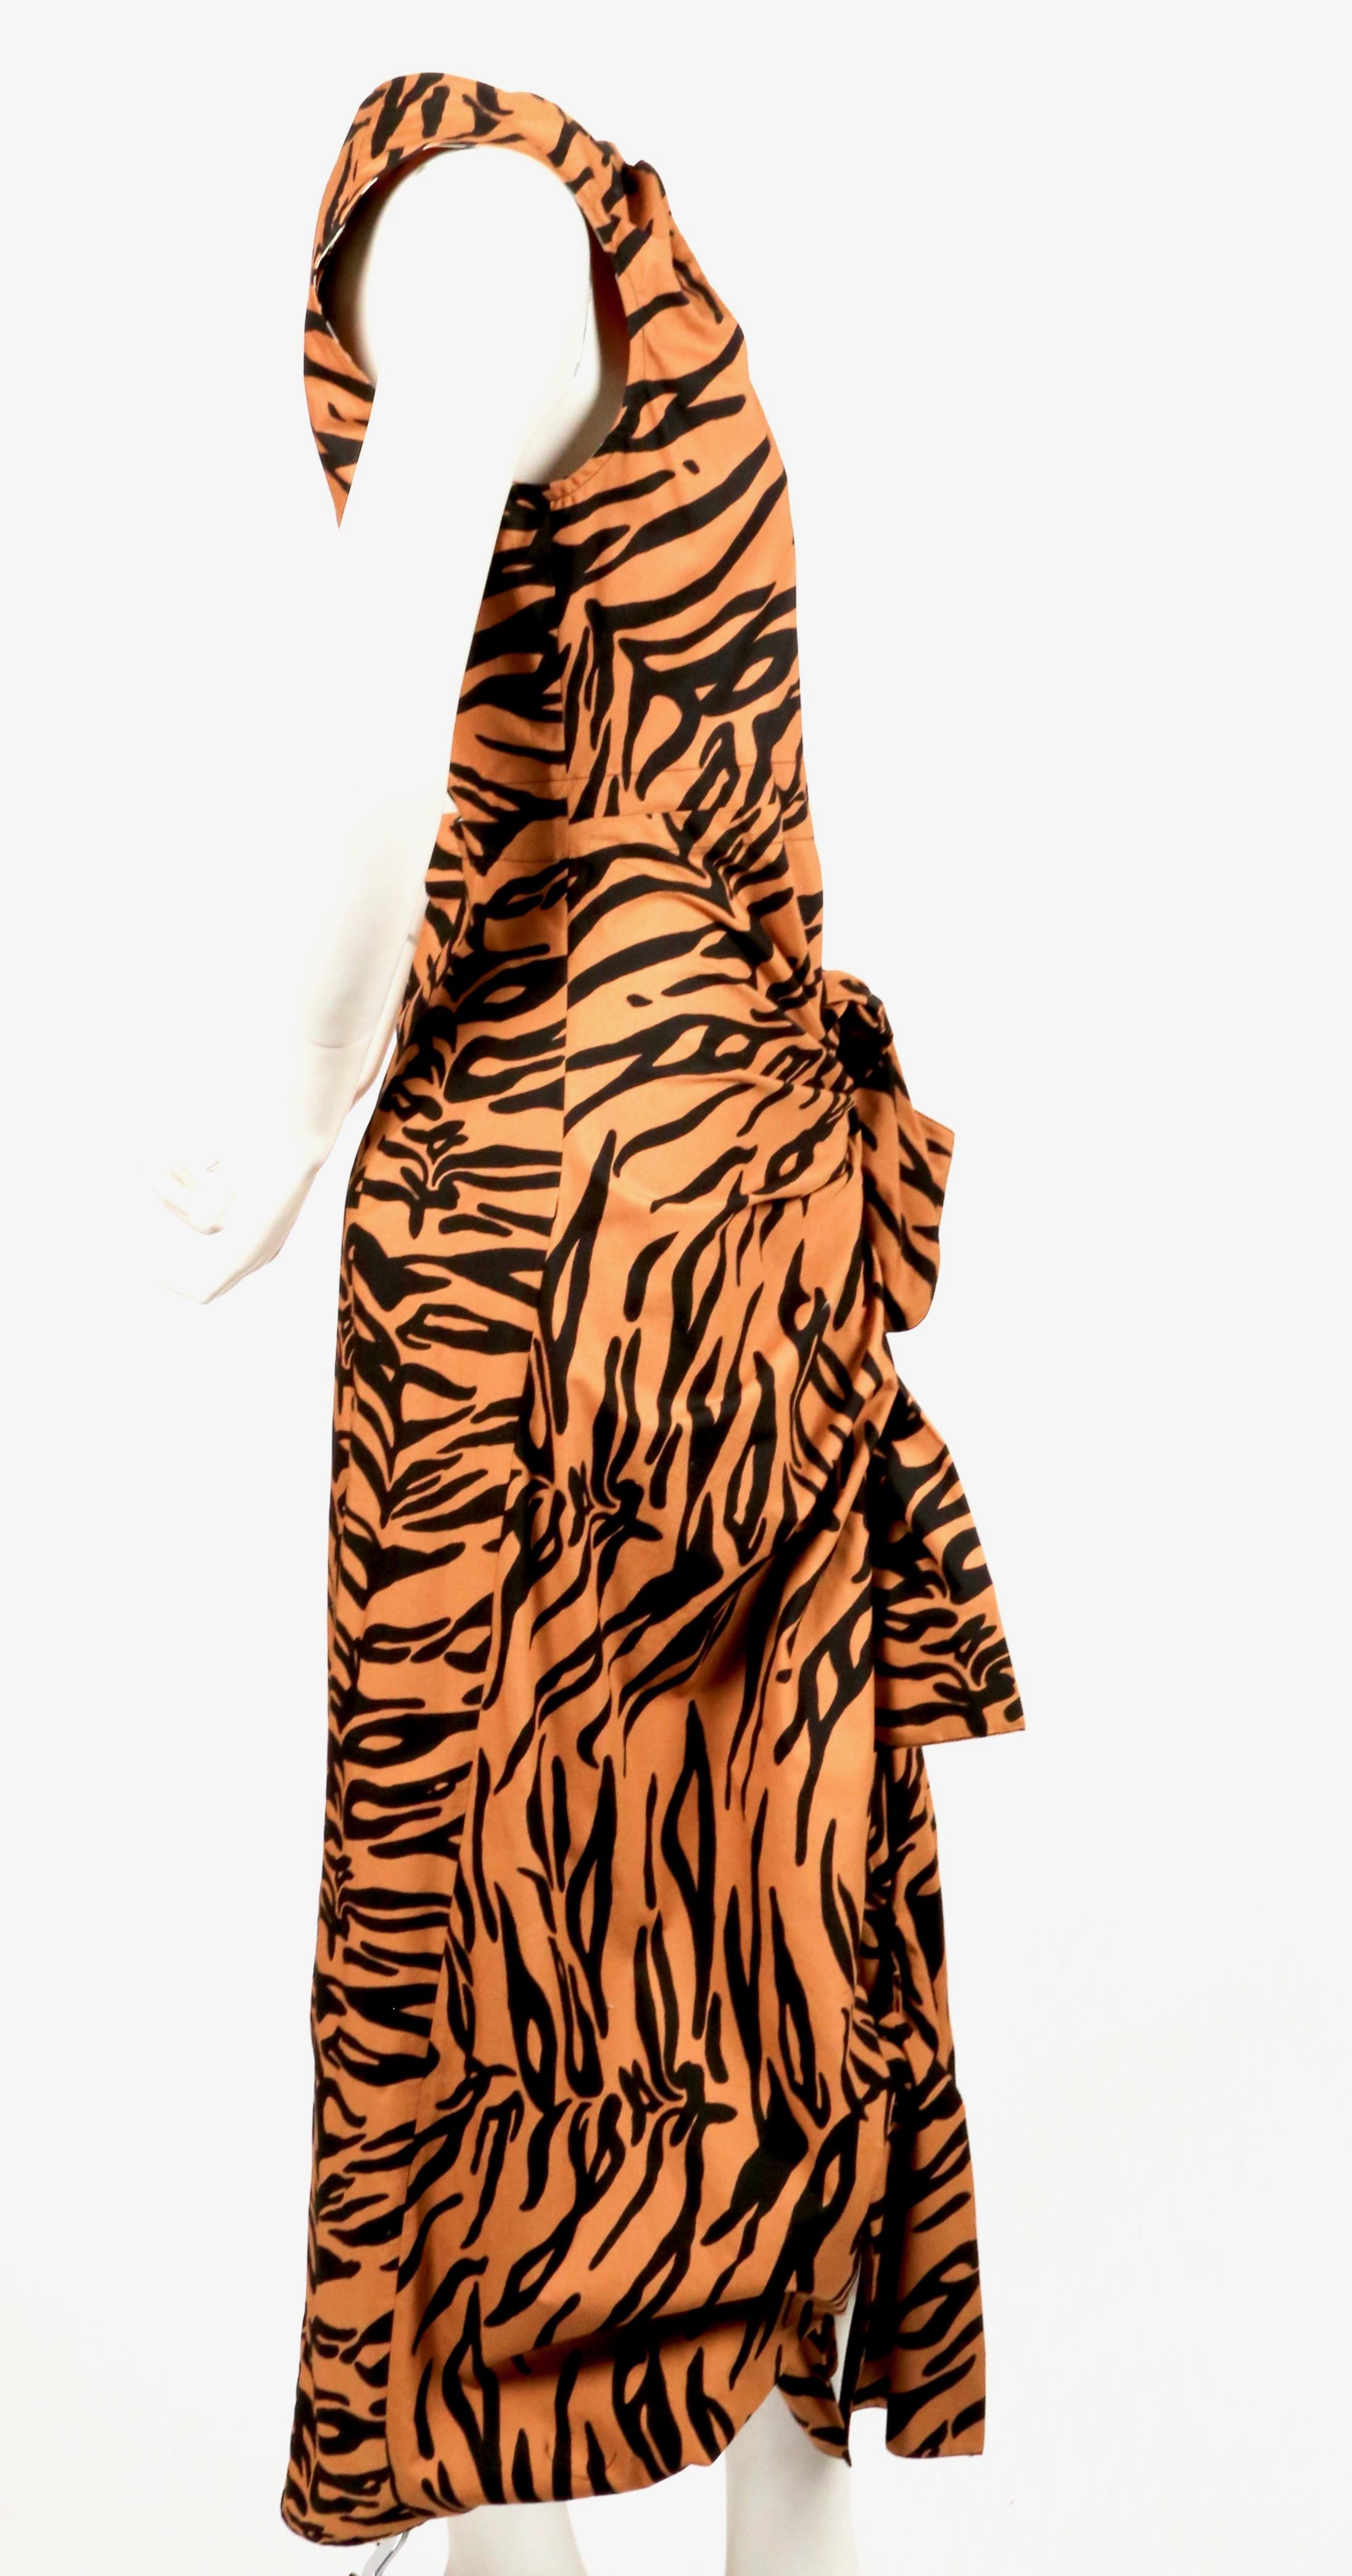 CELINE by PHOEBE PHILO Drapiertes Kleid mit Tigerprint und offenem Rücken - neu (Orange)